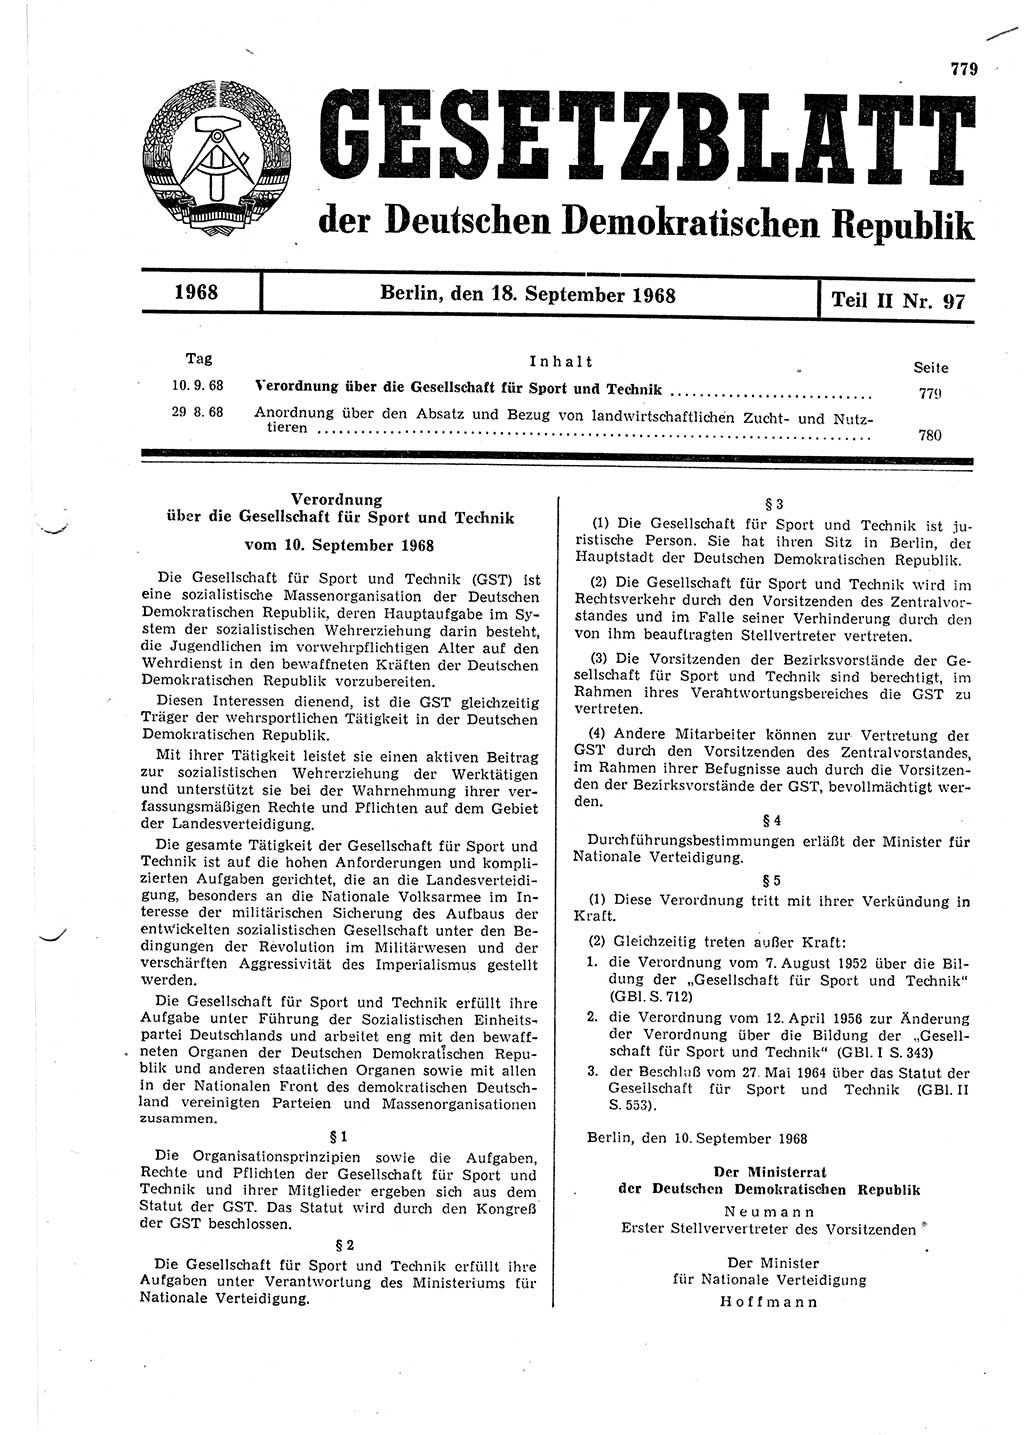 Gesetzblatt (GBl.) der Deutschen Demokratischen Republik (DDR) Teil ⅠⅠ 1968, Seite 779 (GBl. DDR ⅠⅠ 1968, S. 779)